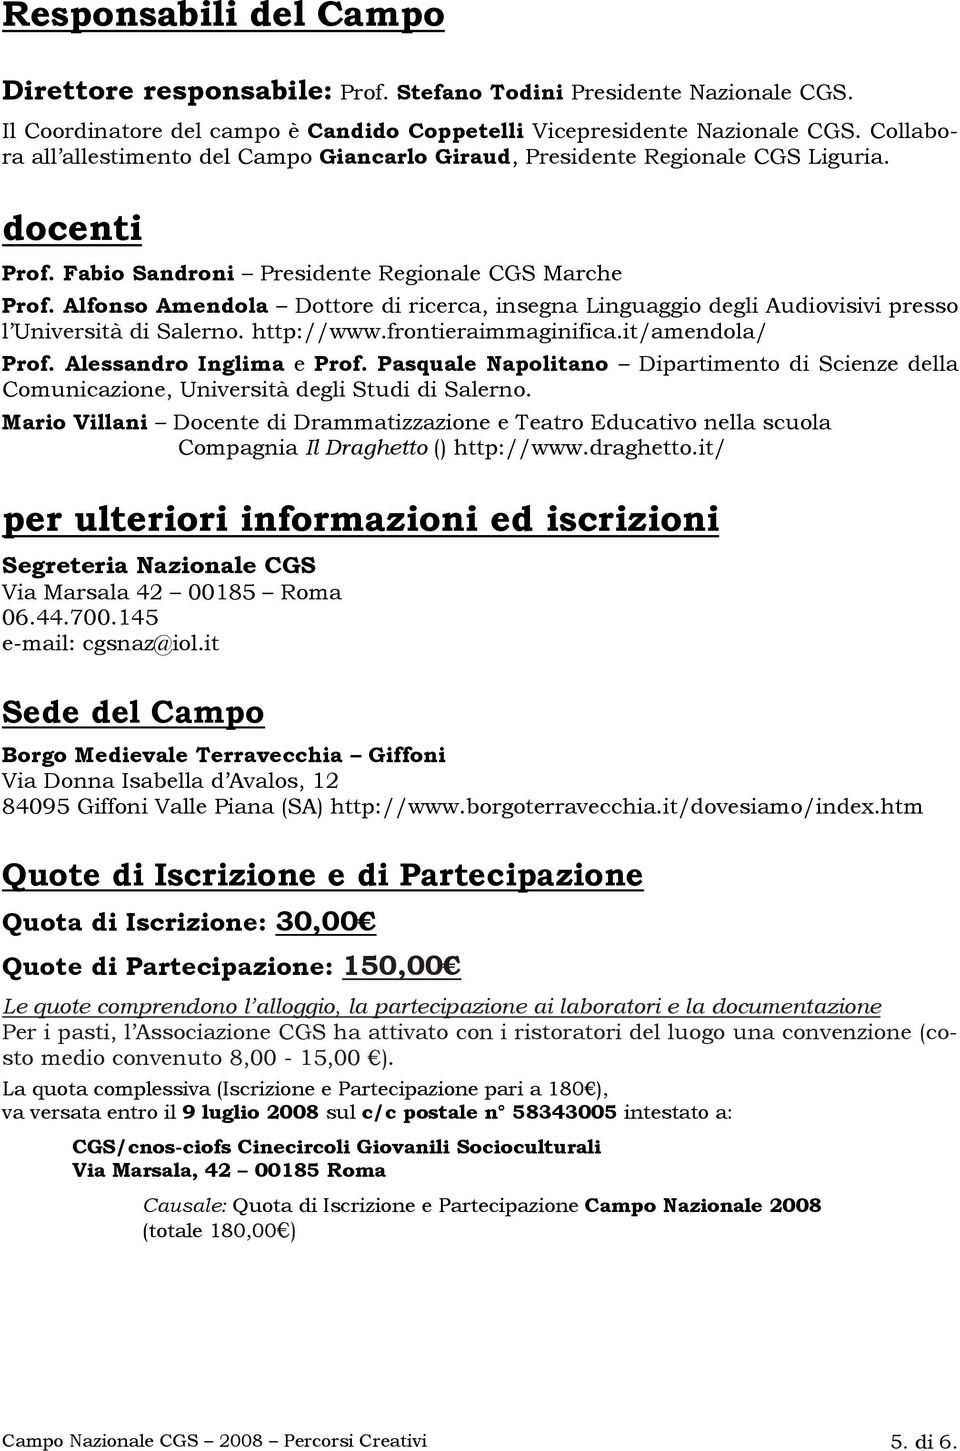 Alfonso Amendola Dottore di ricerca, insegna Linguaggio degli Audiovisivi presso l Università di Salerno. http://www.frontieraimmaginifica.it/amendola/ Prof. Alessandro Inglima e Prof.